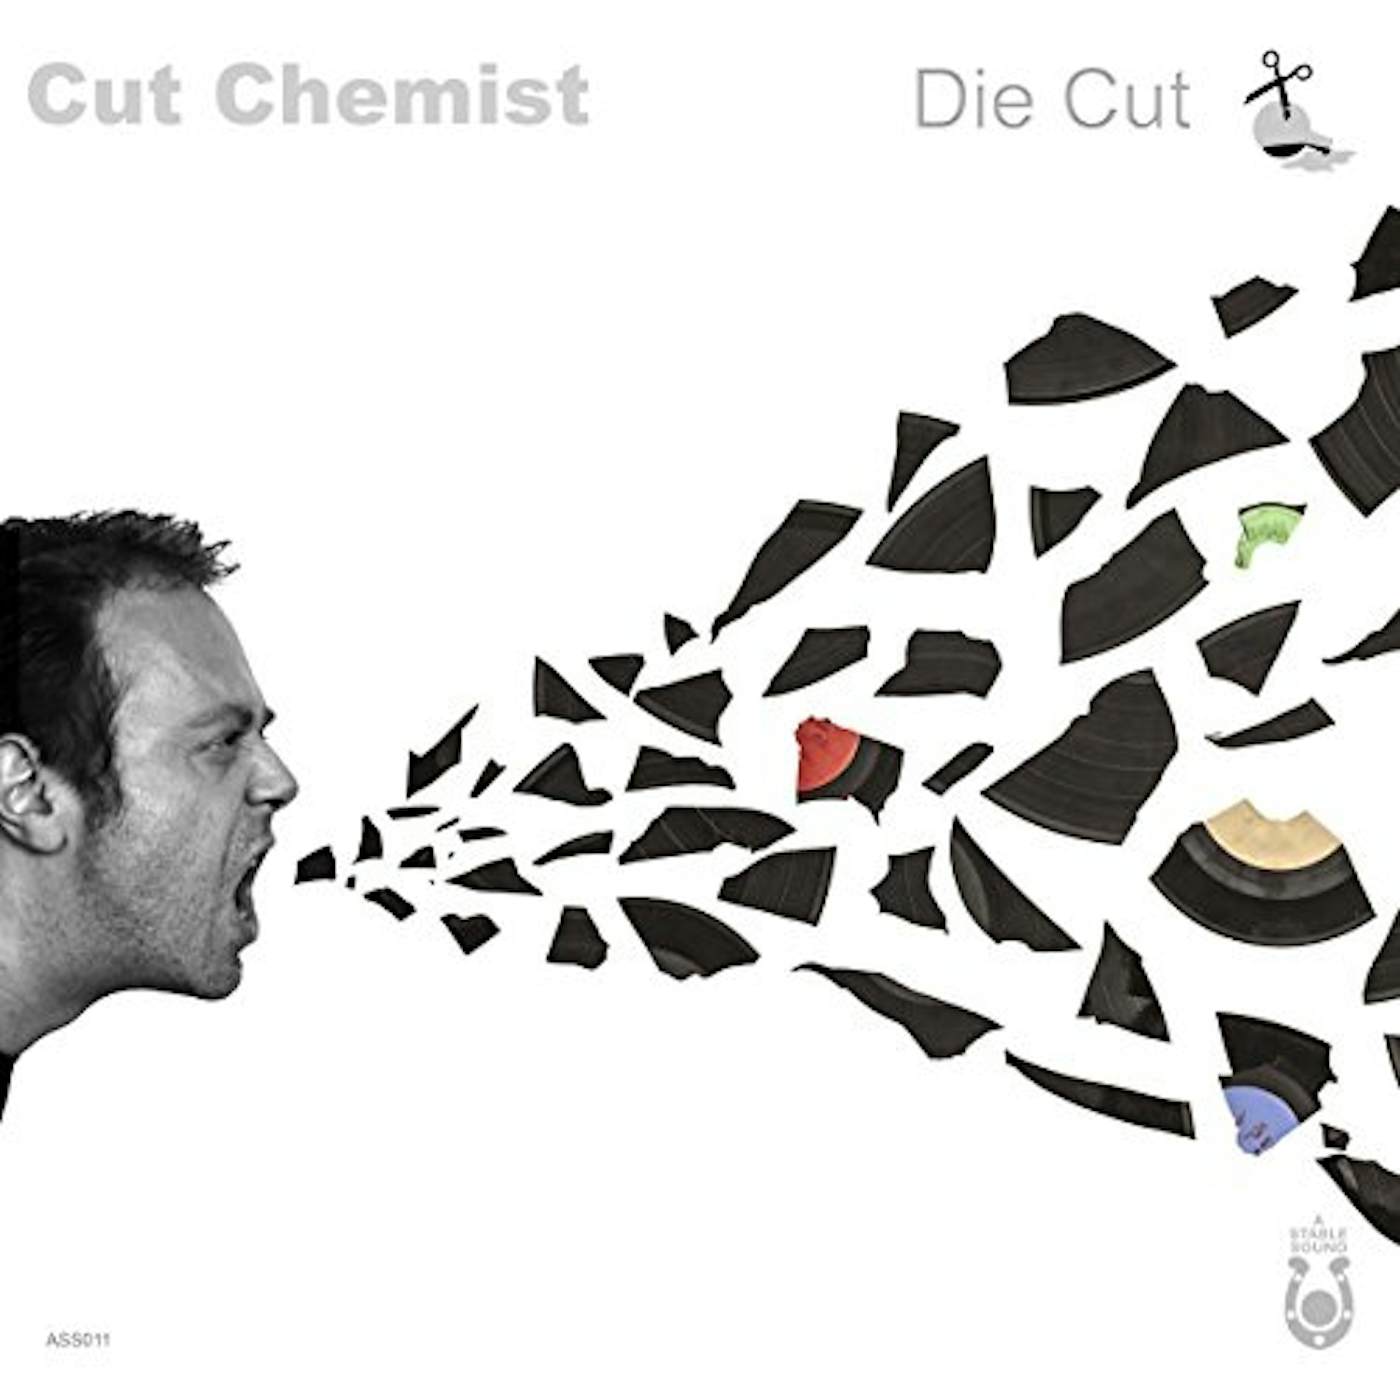 Cut Chemist DIE CUT CD